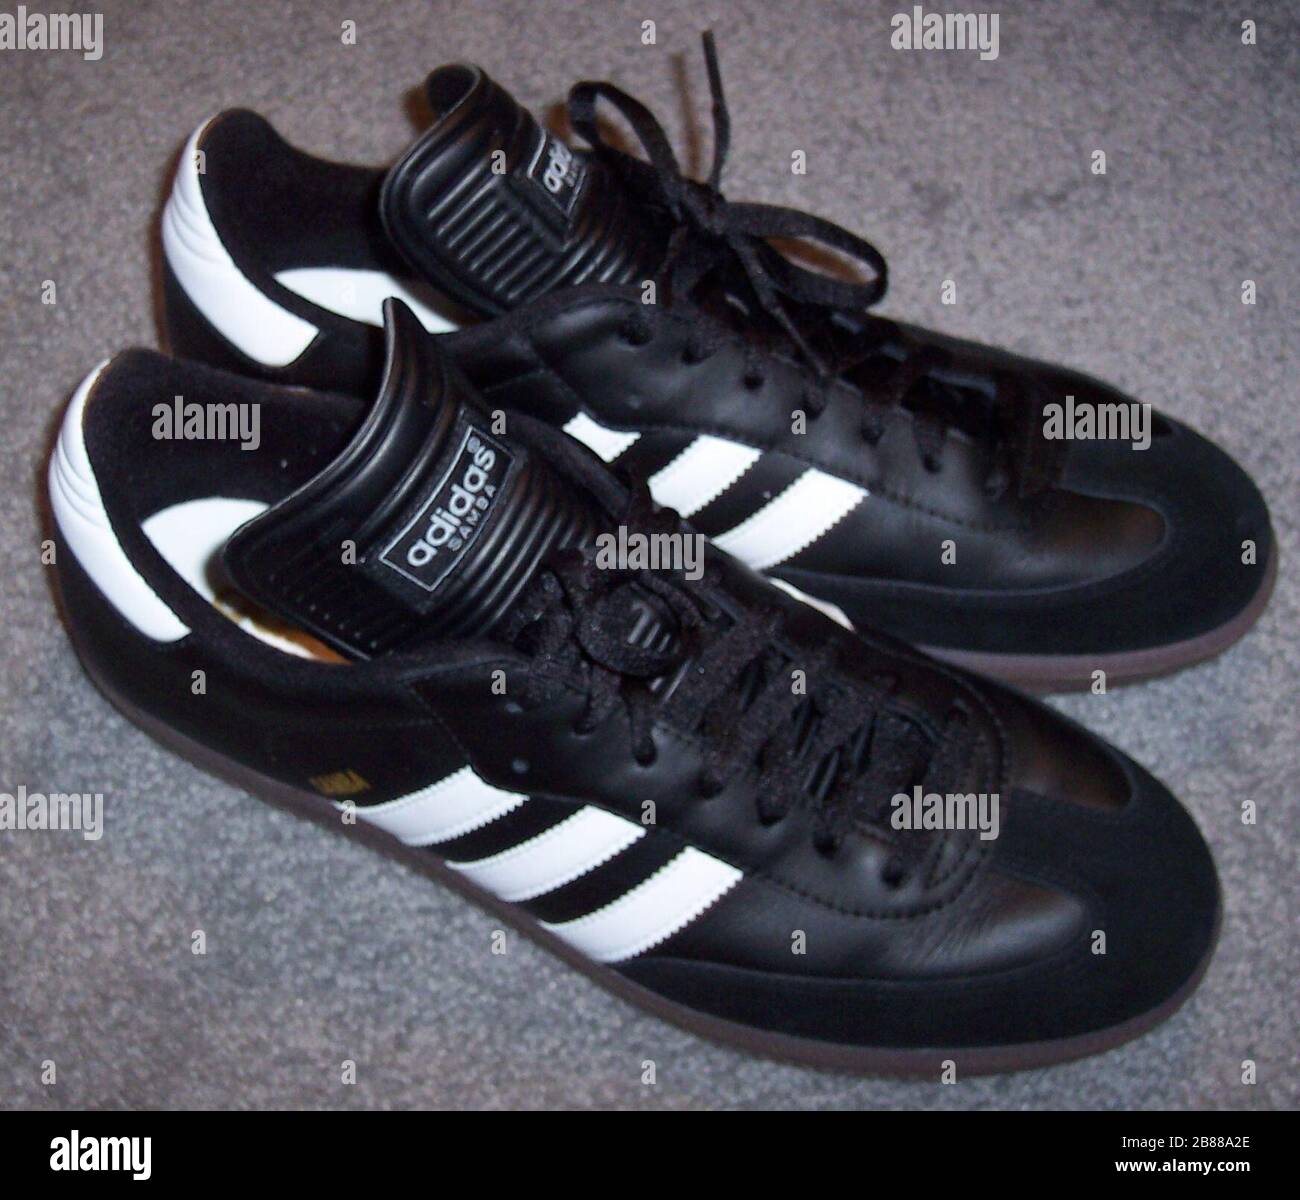 Adidas Original Stockfotos und -bilder Kaufen - Alamy